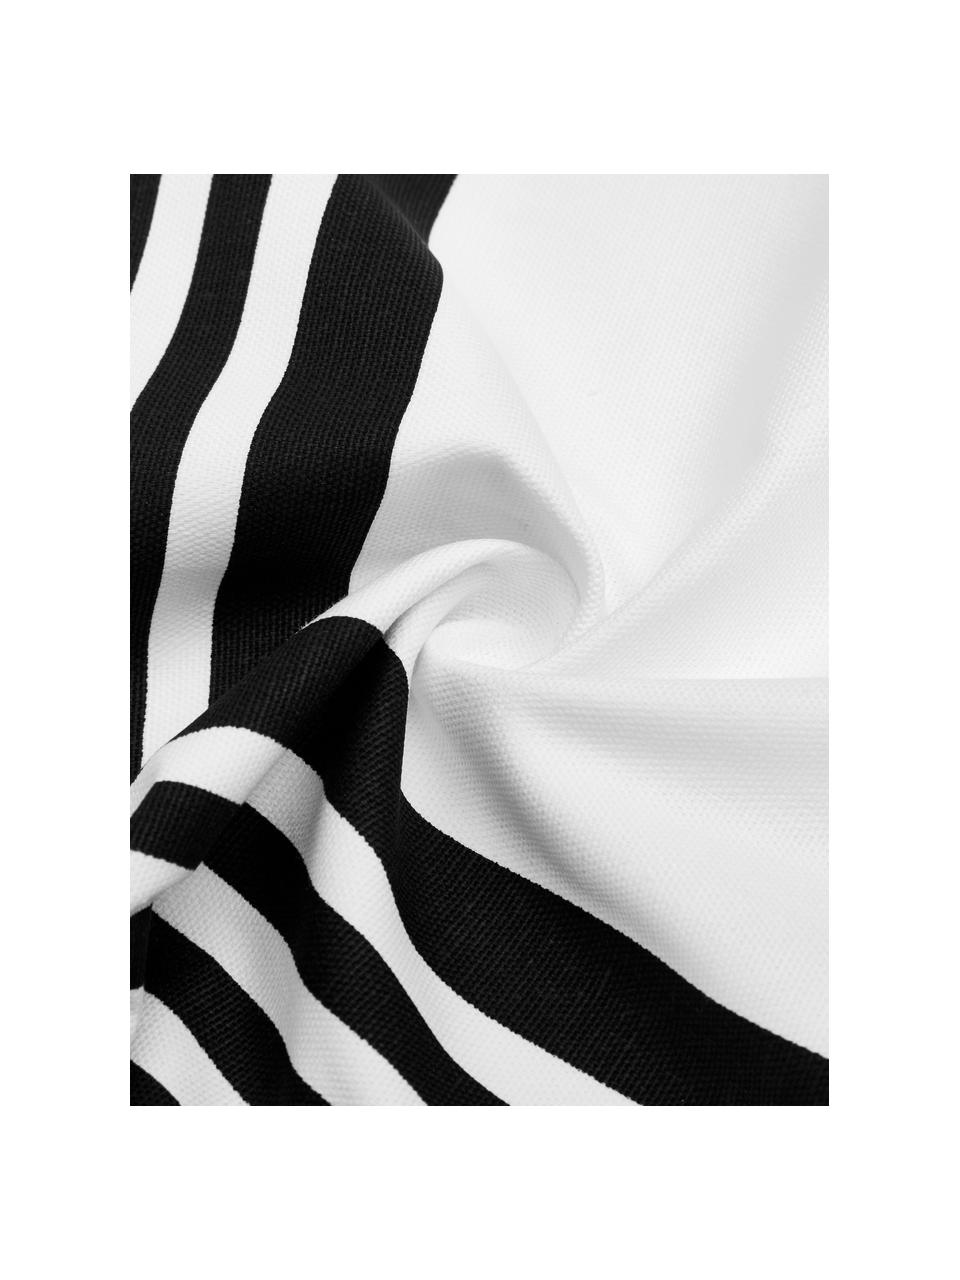 Kissenhülle Zahra in Schwarz/Weiß mit grafischem Muster, 100% Baumwolle, Weiß, Schwarz, 45 x 45 cm